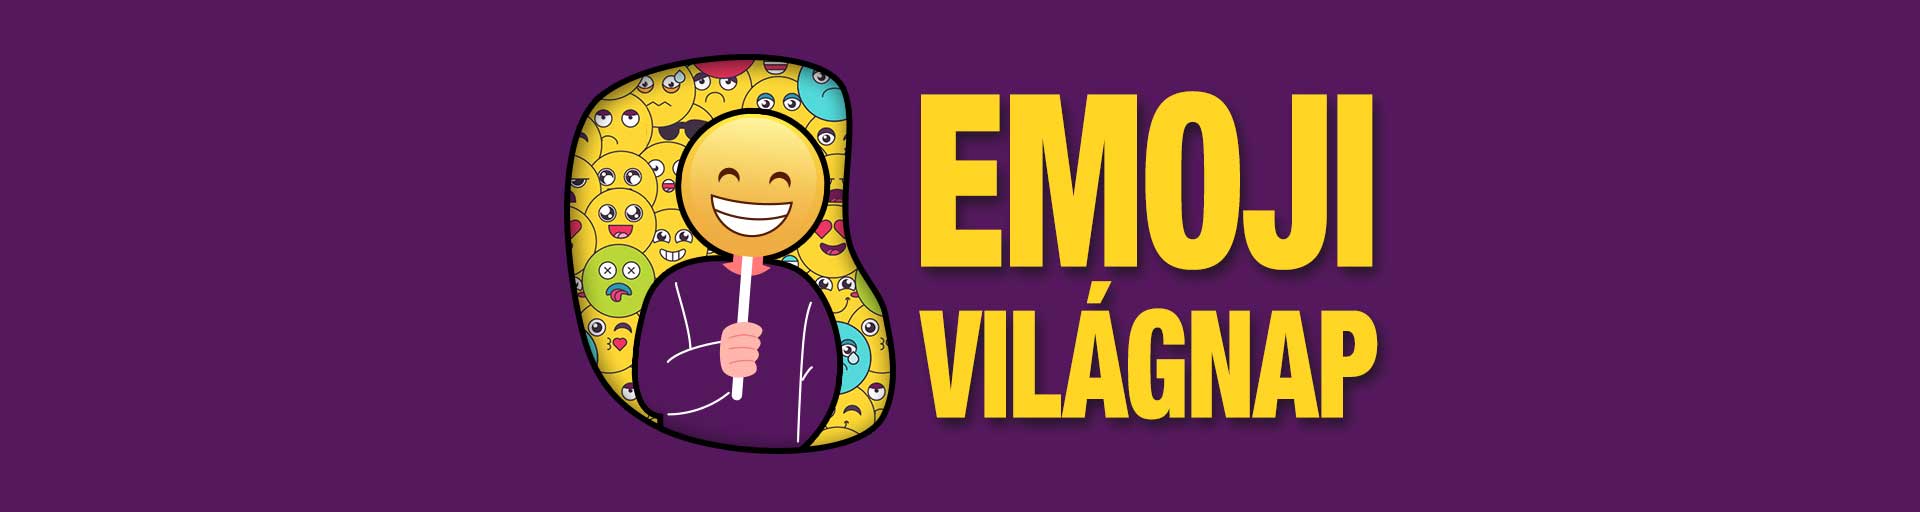 Emoji világnap - Marketinges blog